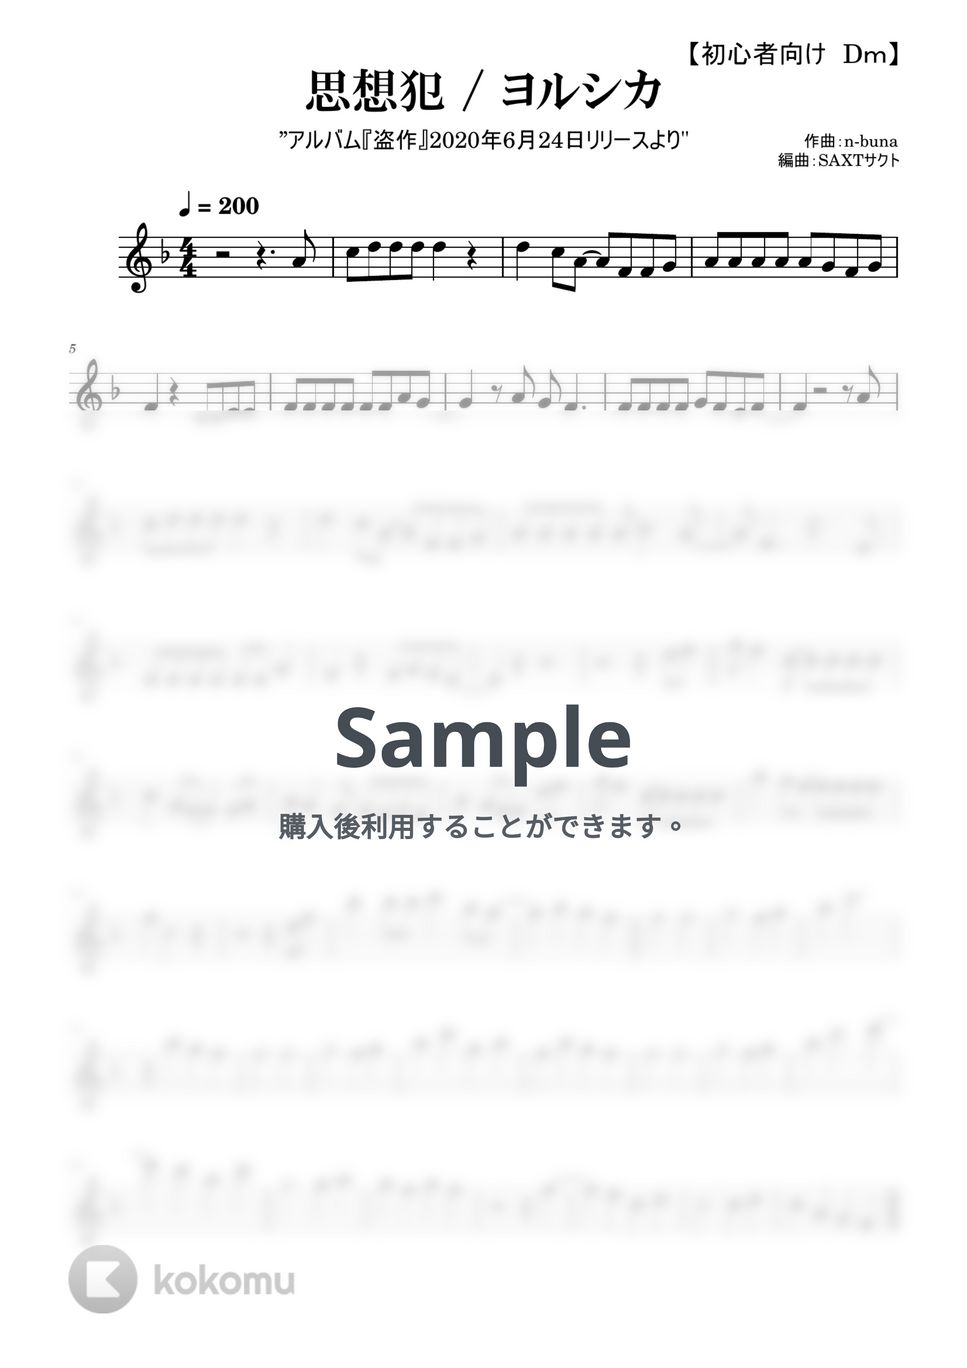 ヨルシカ - 思想犯 (めちゃラク譜) by saxt